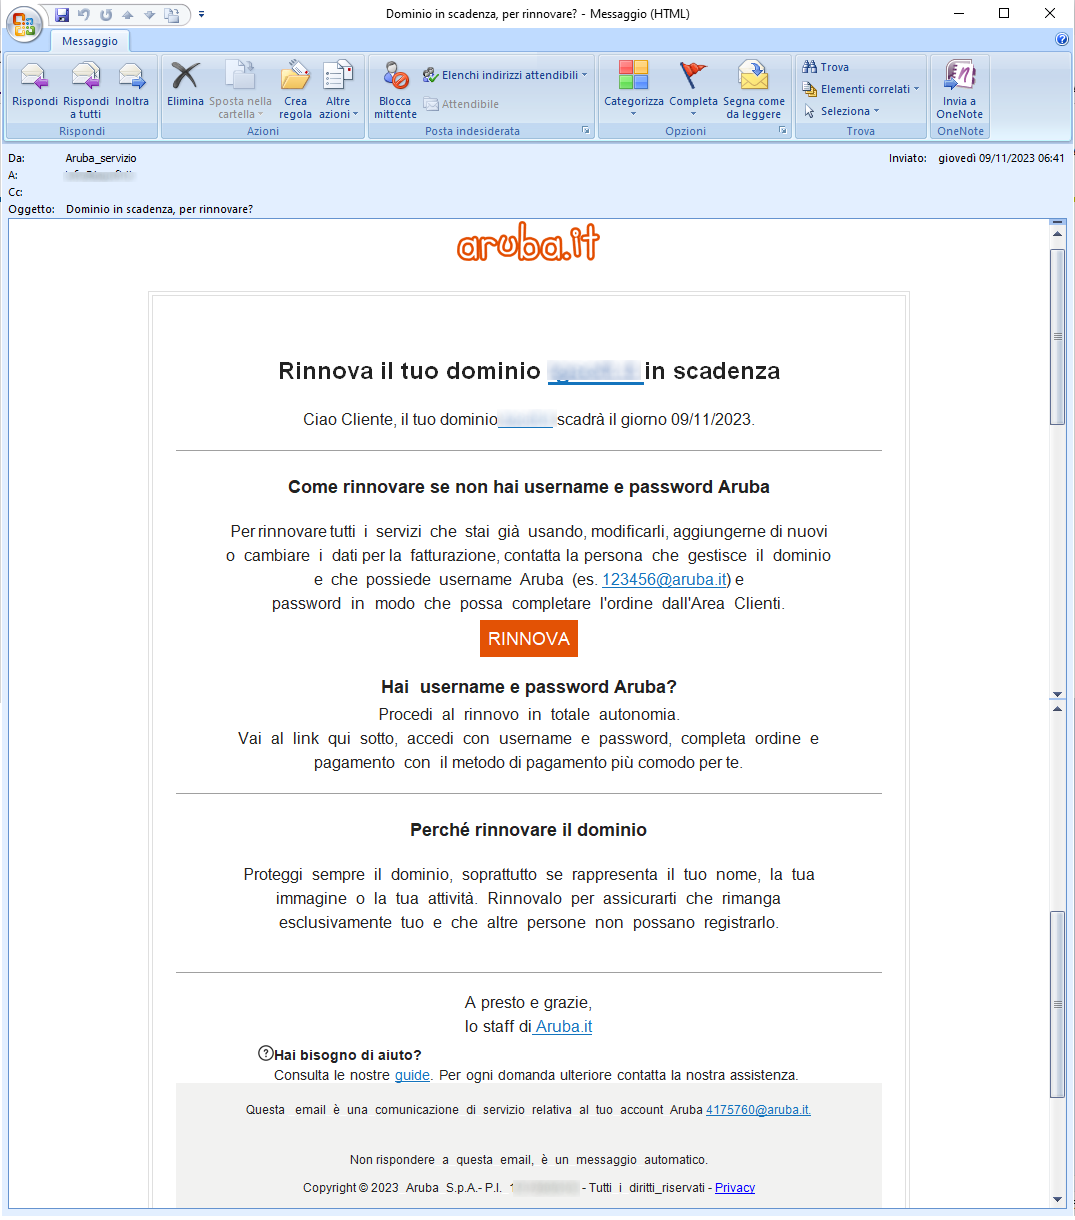 Clicca per ingrandire l'immagine della falsa e-mail di Aruba che comunica che il suo dominio è in scadenza, ma in realtà è una TRUFFA!